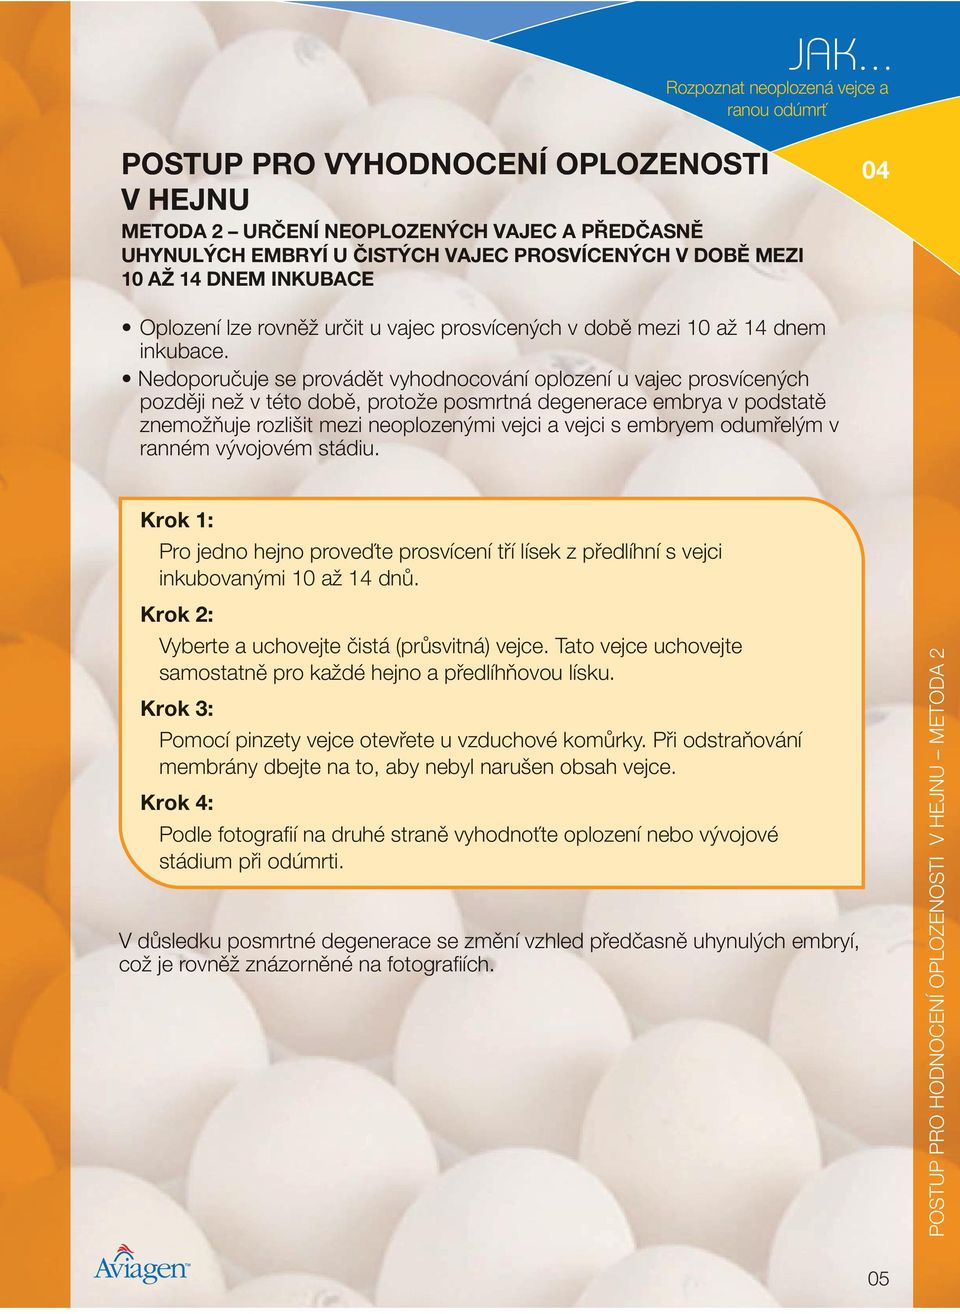 Nedoporučuje se provádět vyhodnocování oplození u vajec prosvícených později než v této době, protože posmrtná degenerace embrya v podstatě znemožňuje rozlišit mezi neoplozenými vejci a vejci s